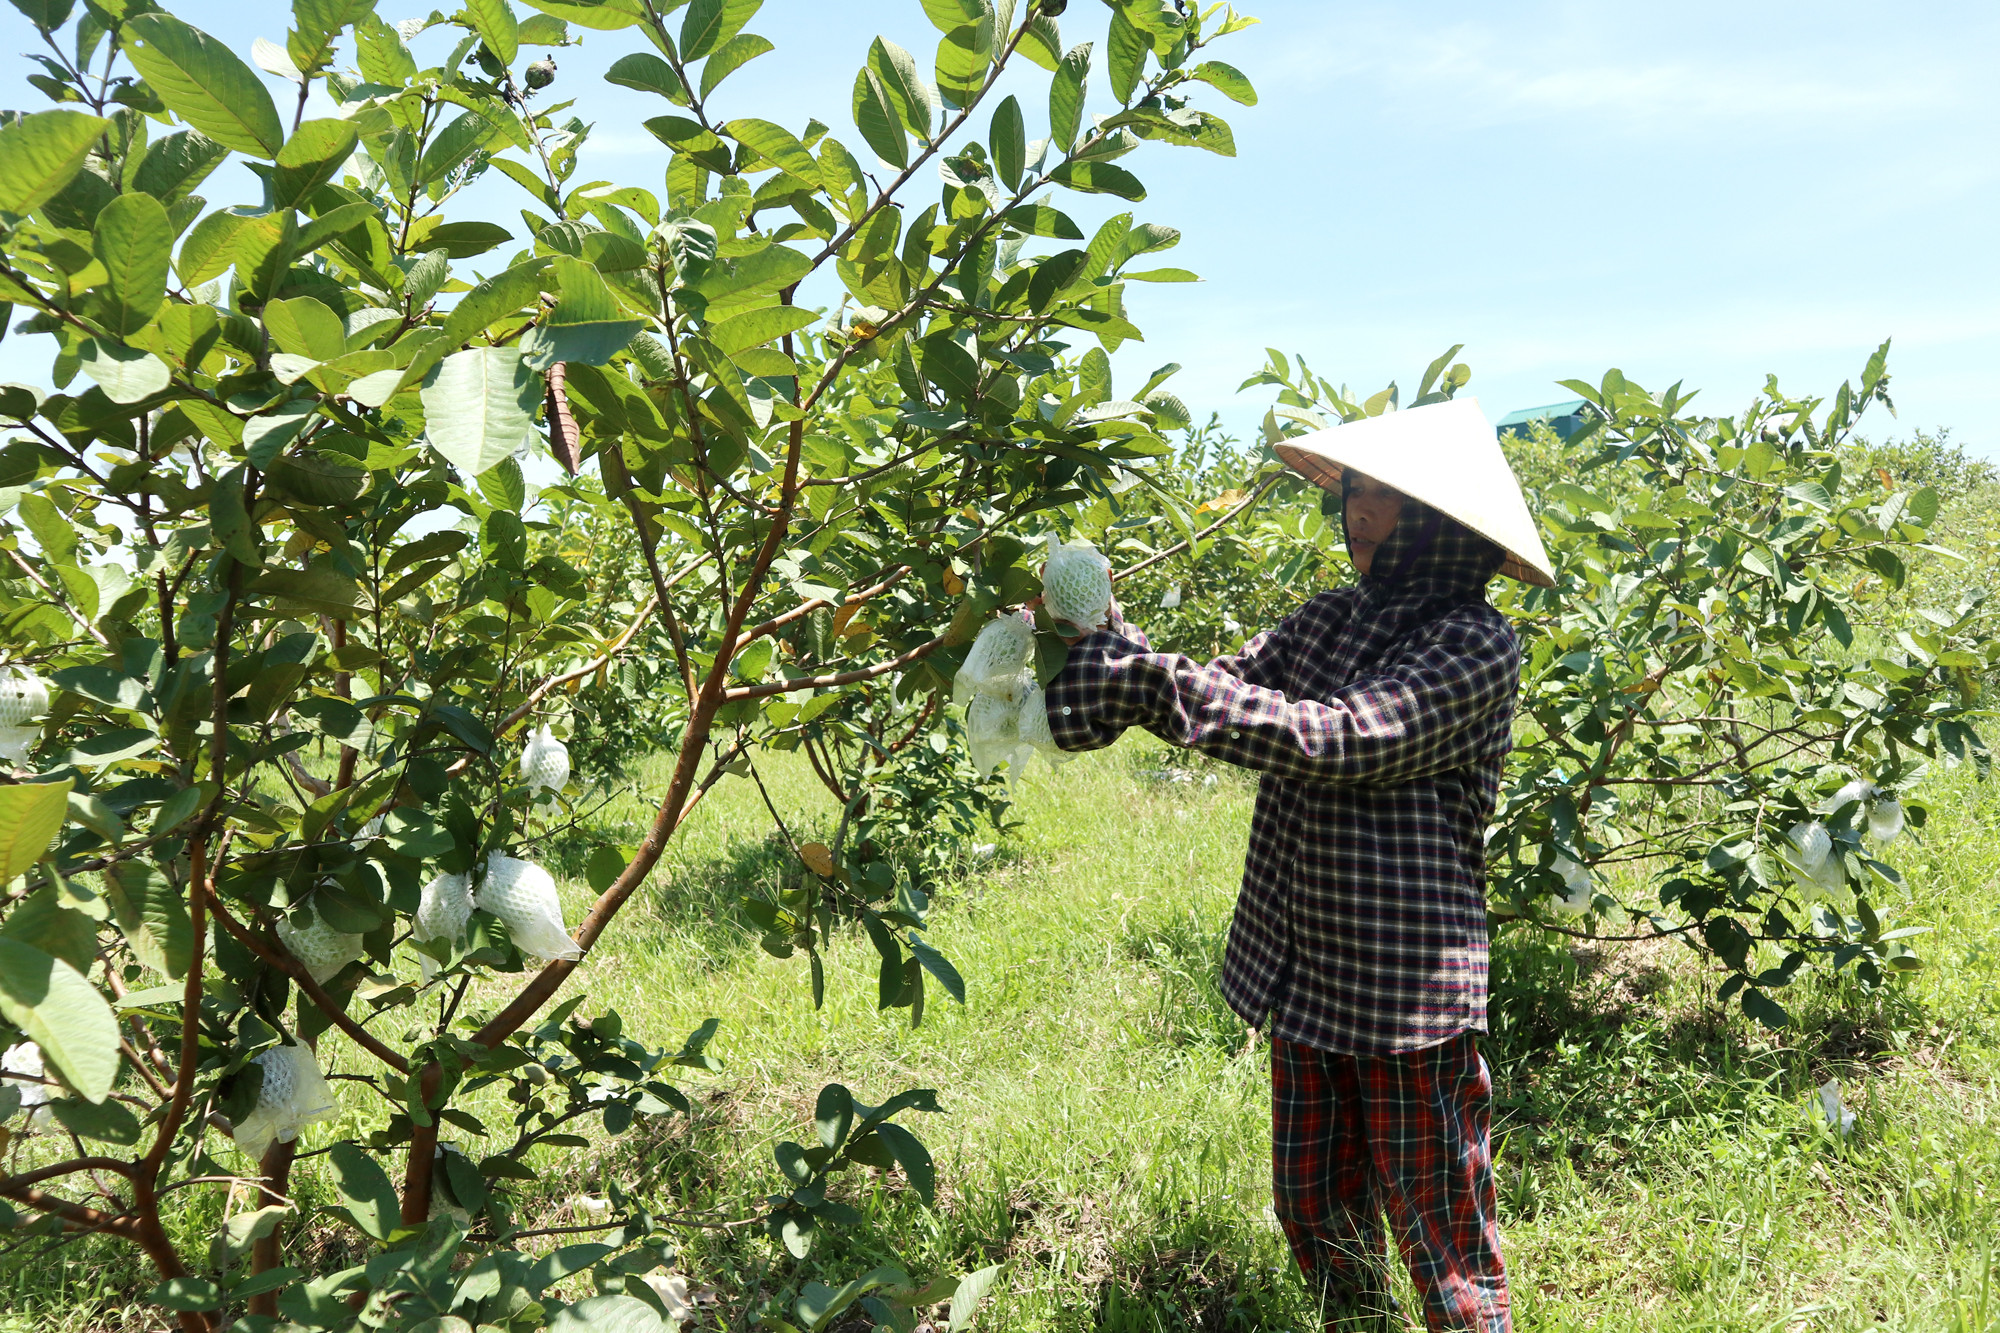 Trang trại cây ăn quả 3ha thuê lại từ đất 5% của xã do Hội Nông dân Thanh Mỹ (Thanh Chương) làm chủ. Antr: Thanh Phúc